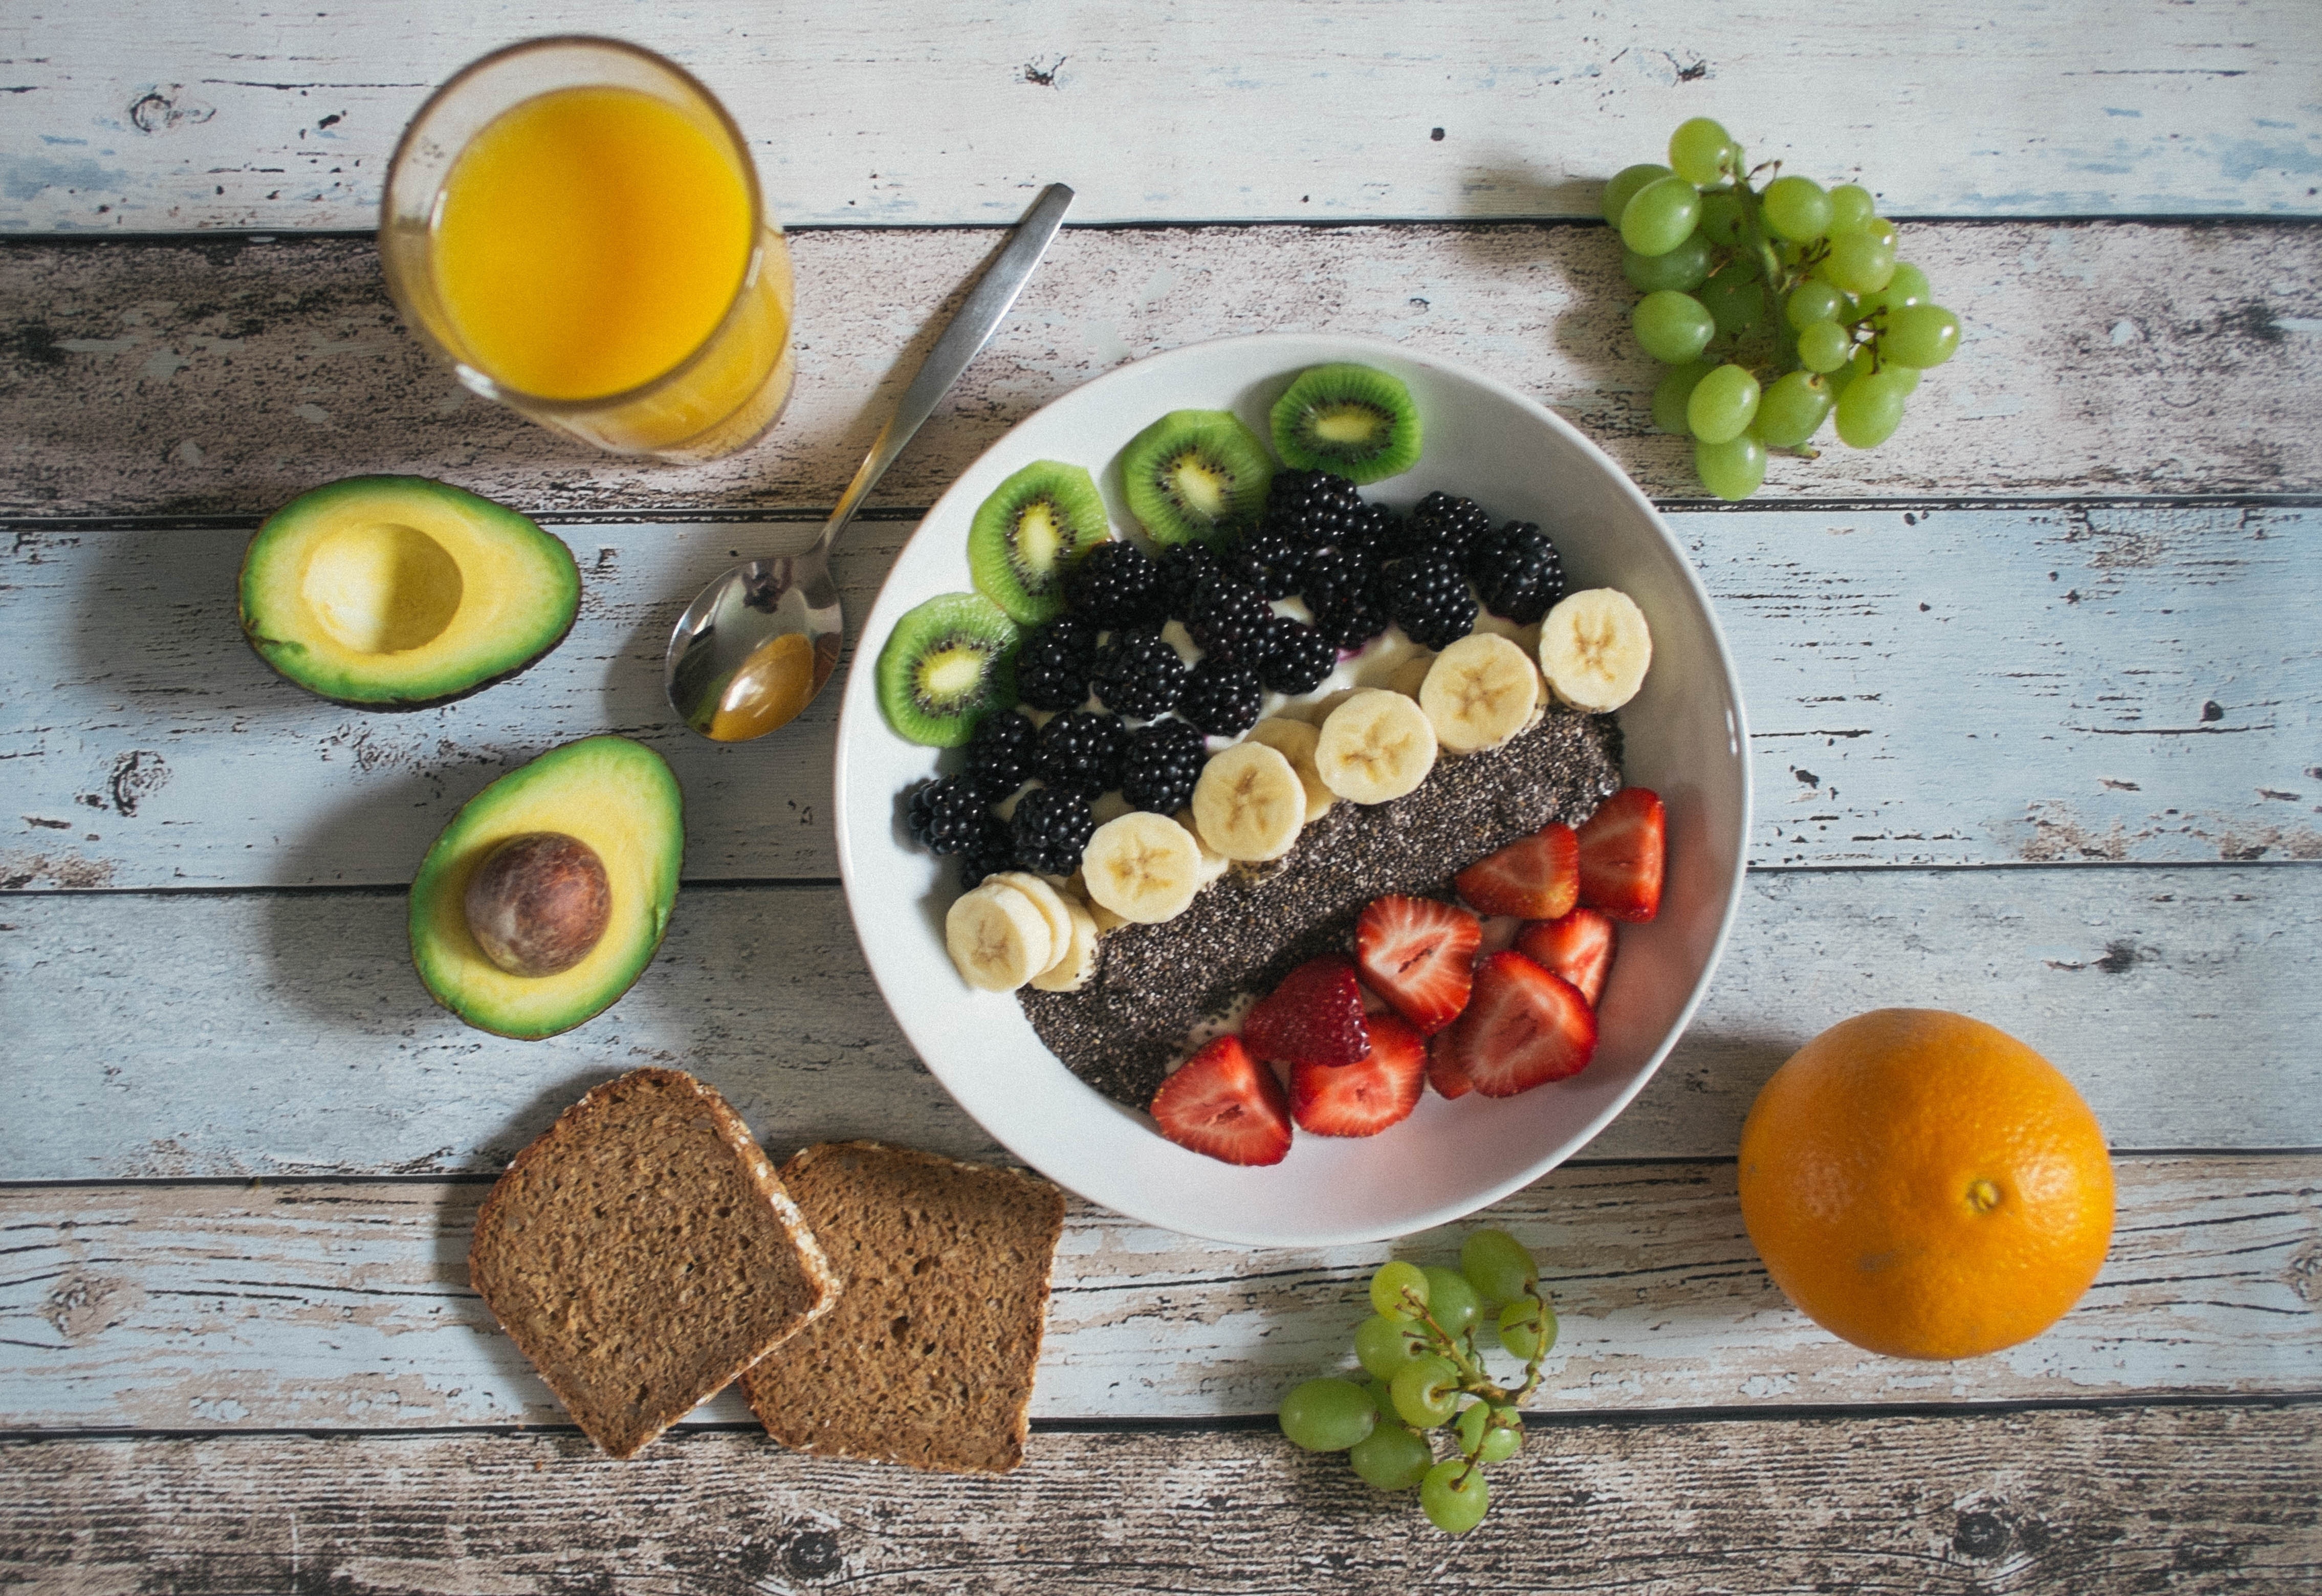 Healthy-Snacks-Fruit-Avocado-Toast